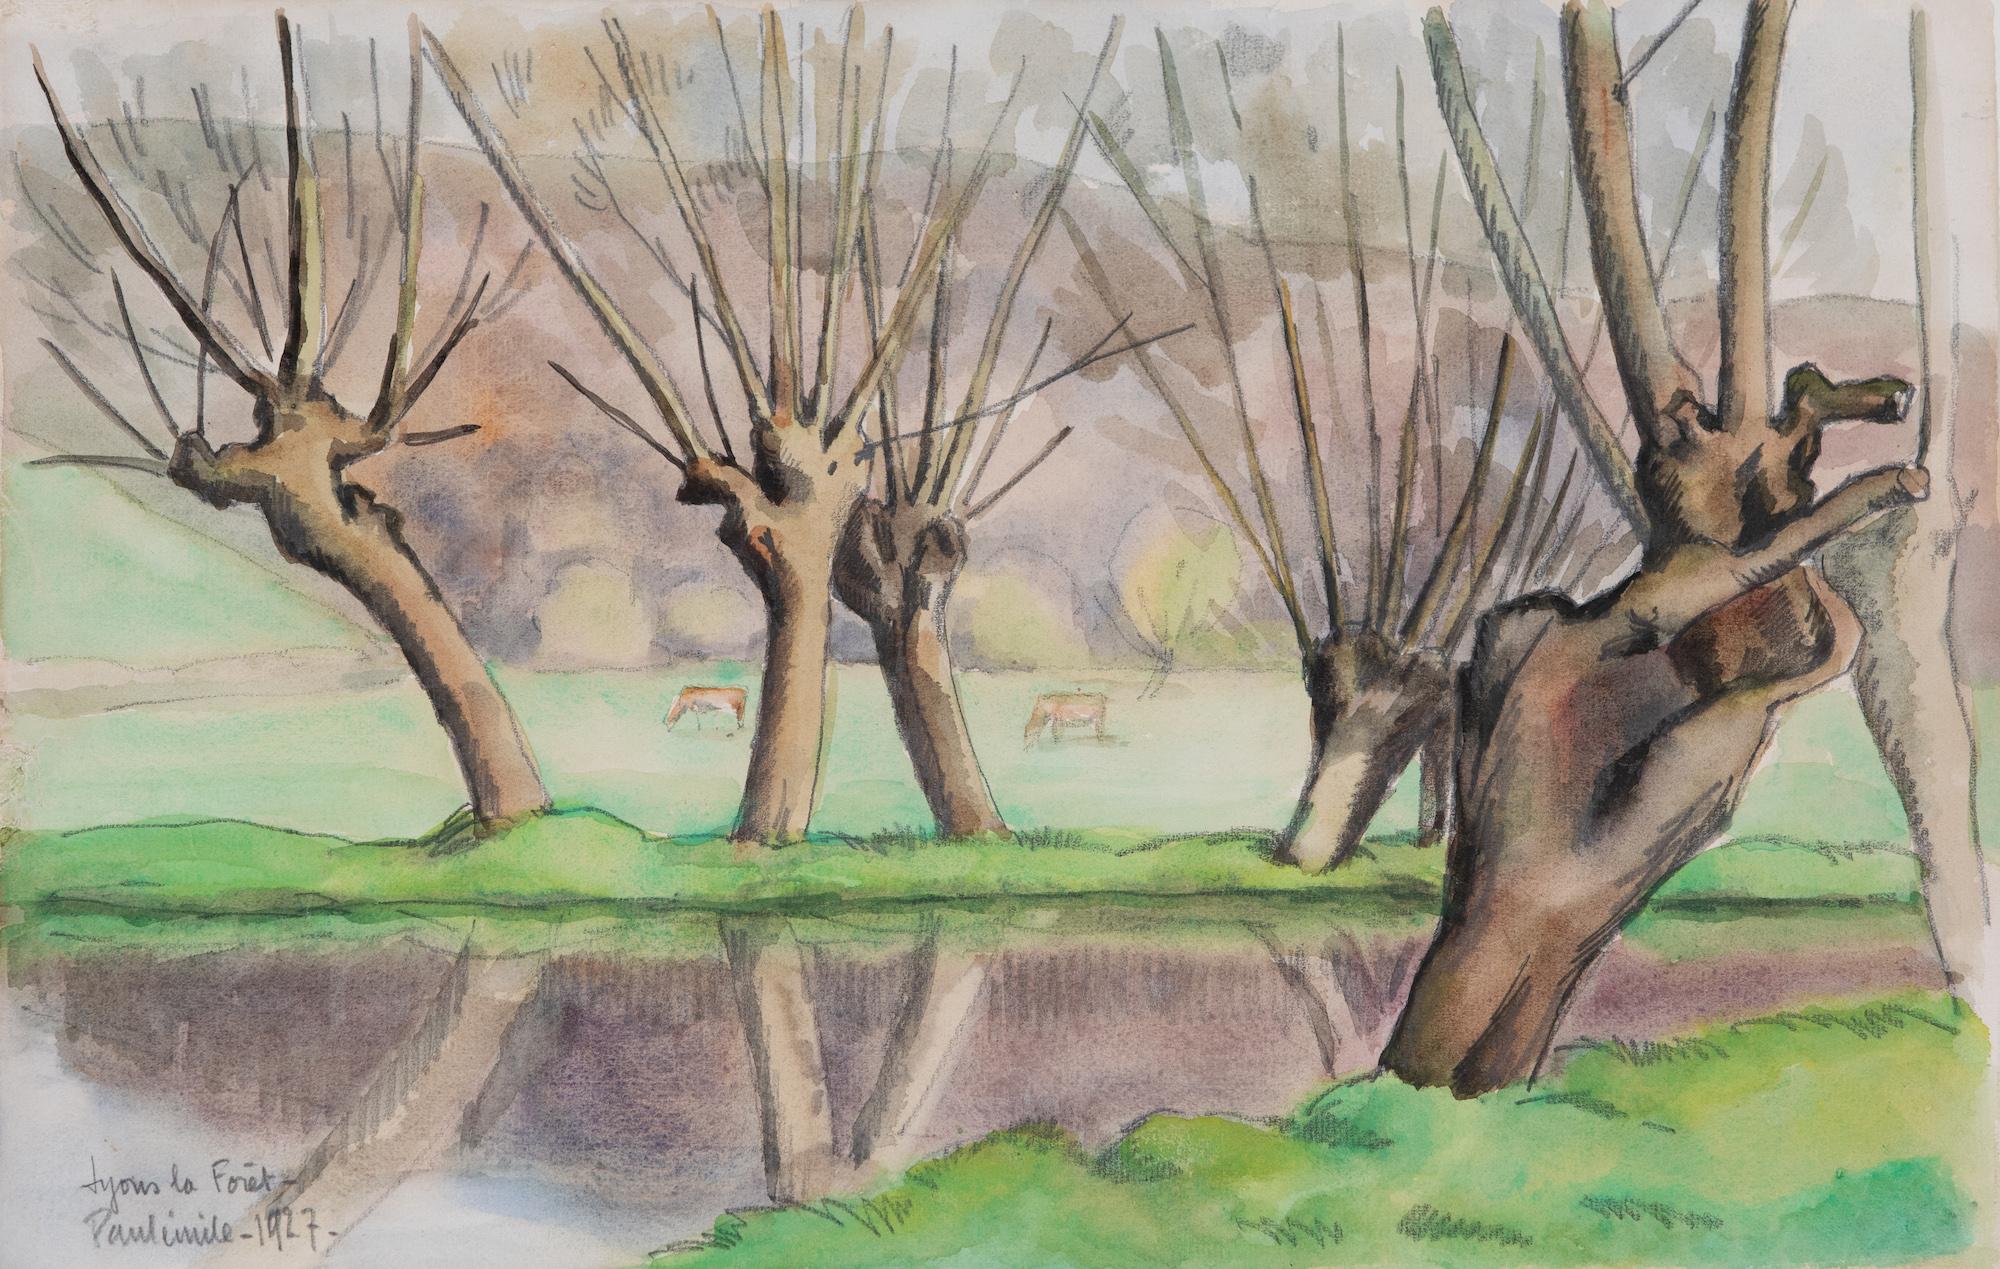 Paul Emile Pissarro Landscape Art – Fluss Eure, Lyons la Forêt von Paulémile Pissarro - Landschaftsaquarell